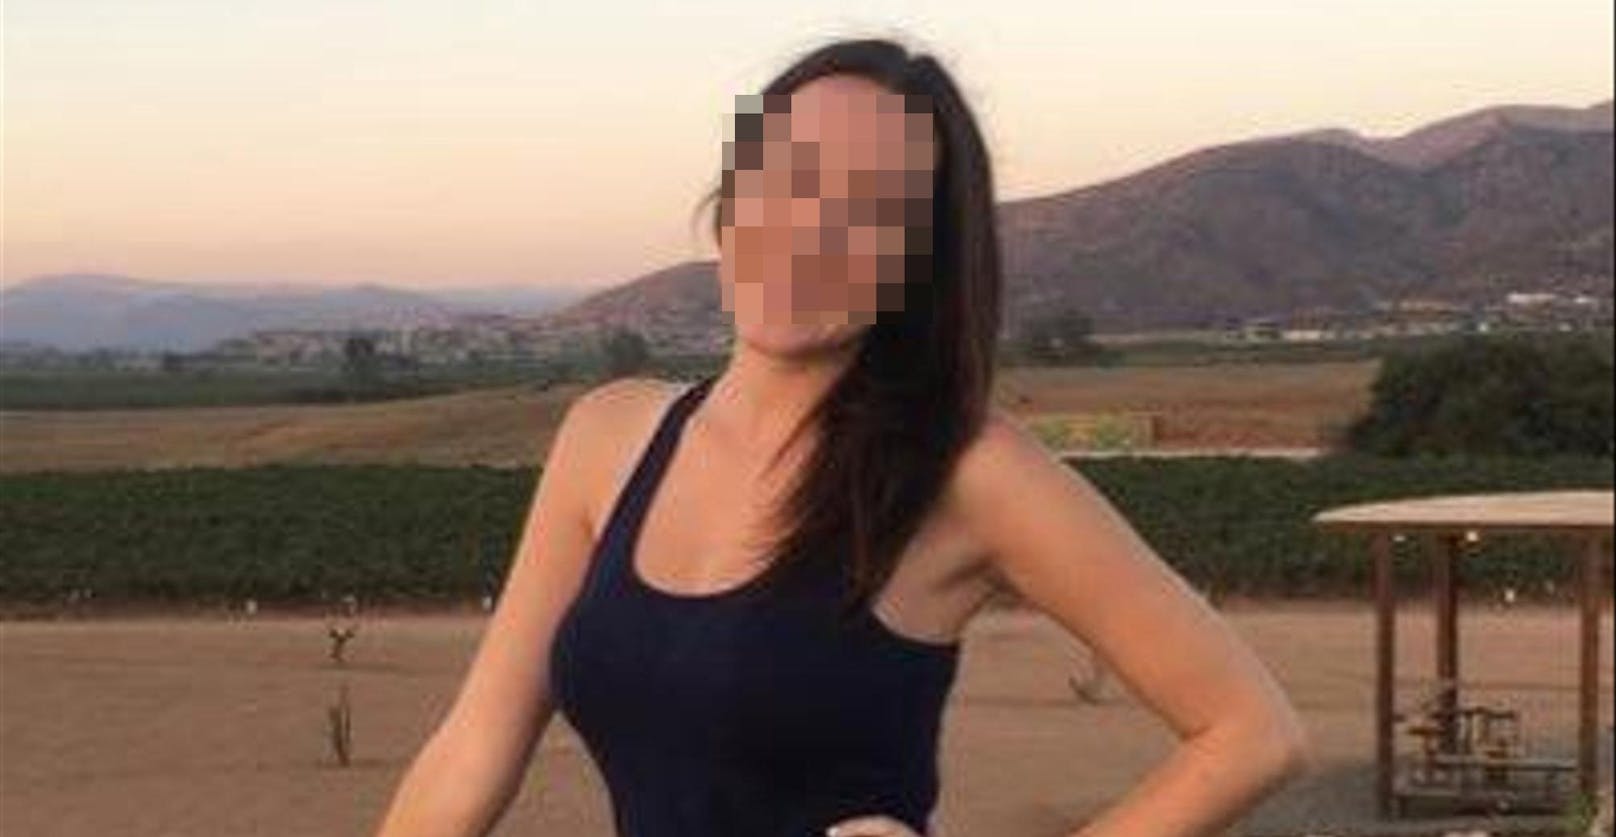 "Sie hatte immer ein Lächeln im Gesicht": In San Diego starb eine 29-Jährige, als ein Mann auf sie stürzte.